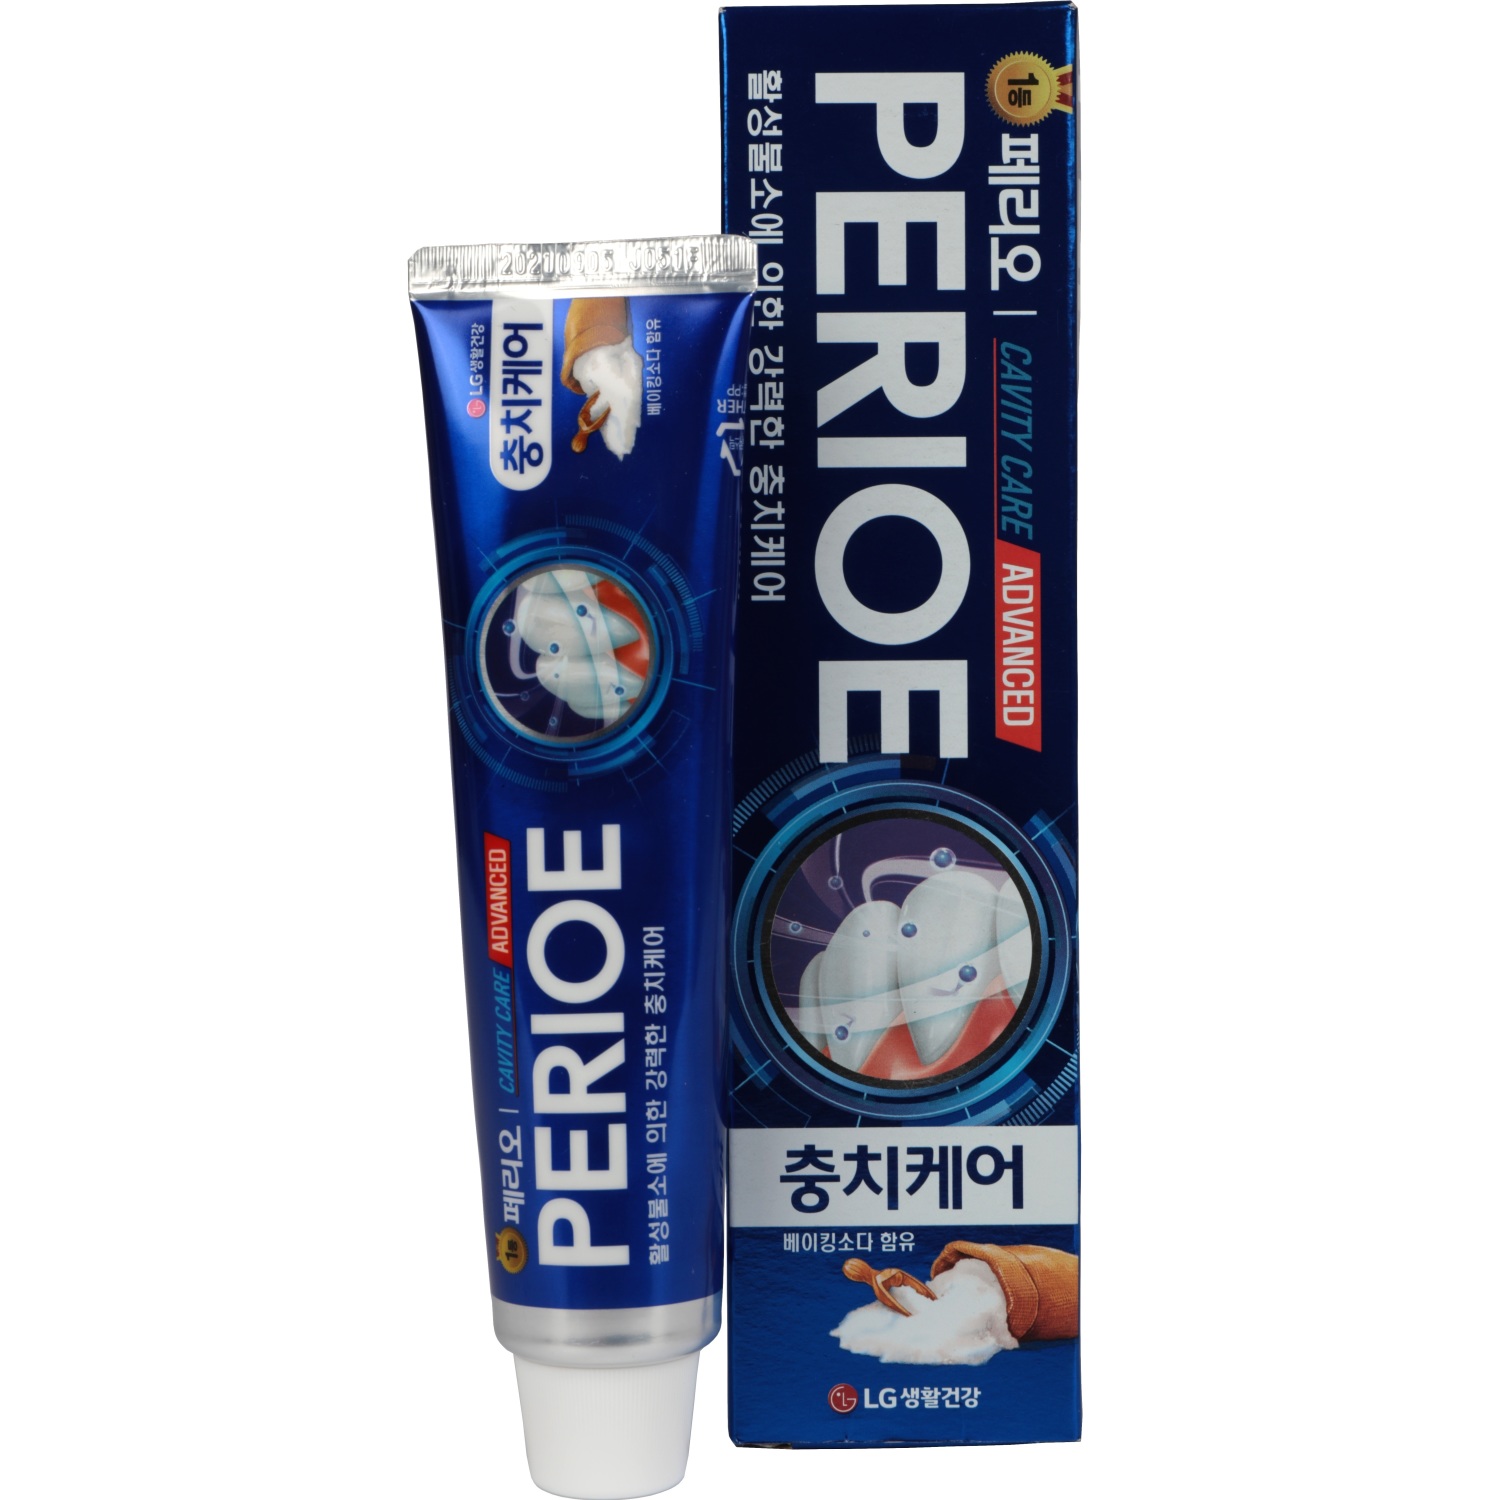 Зубная паста Perioe Cavity Care Advanced для эффективной борьбы с кариесом 130 г